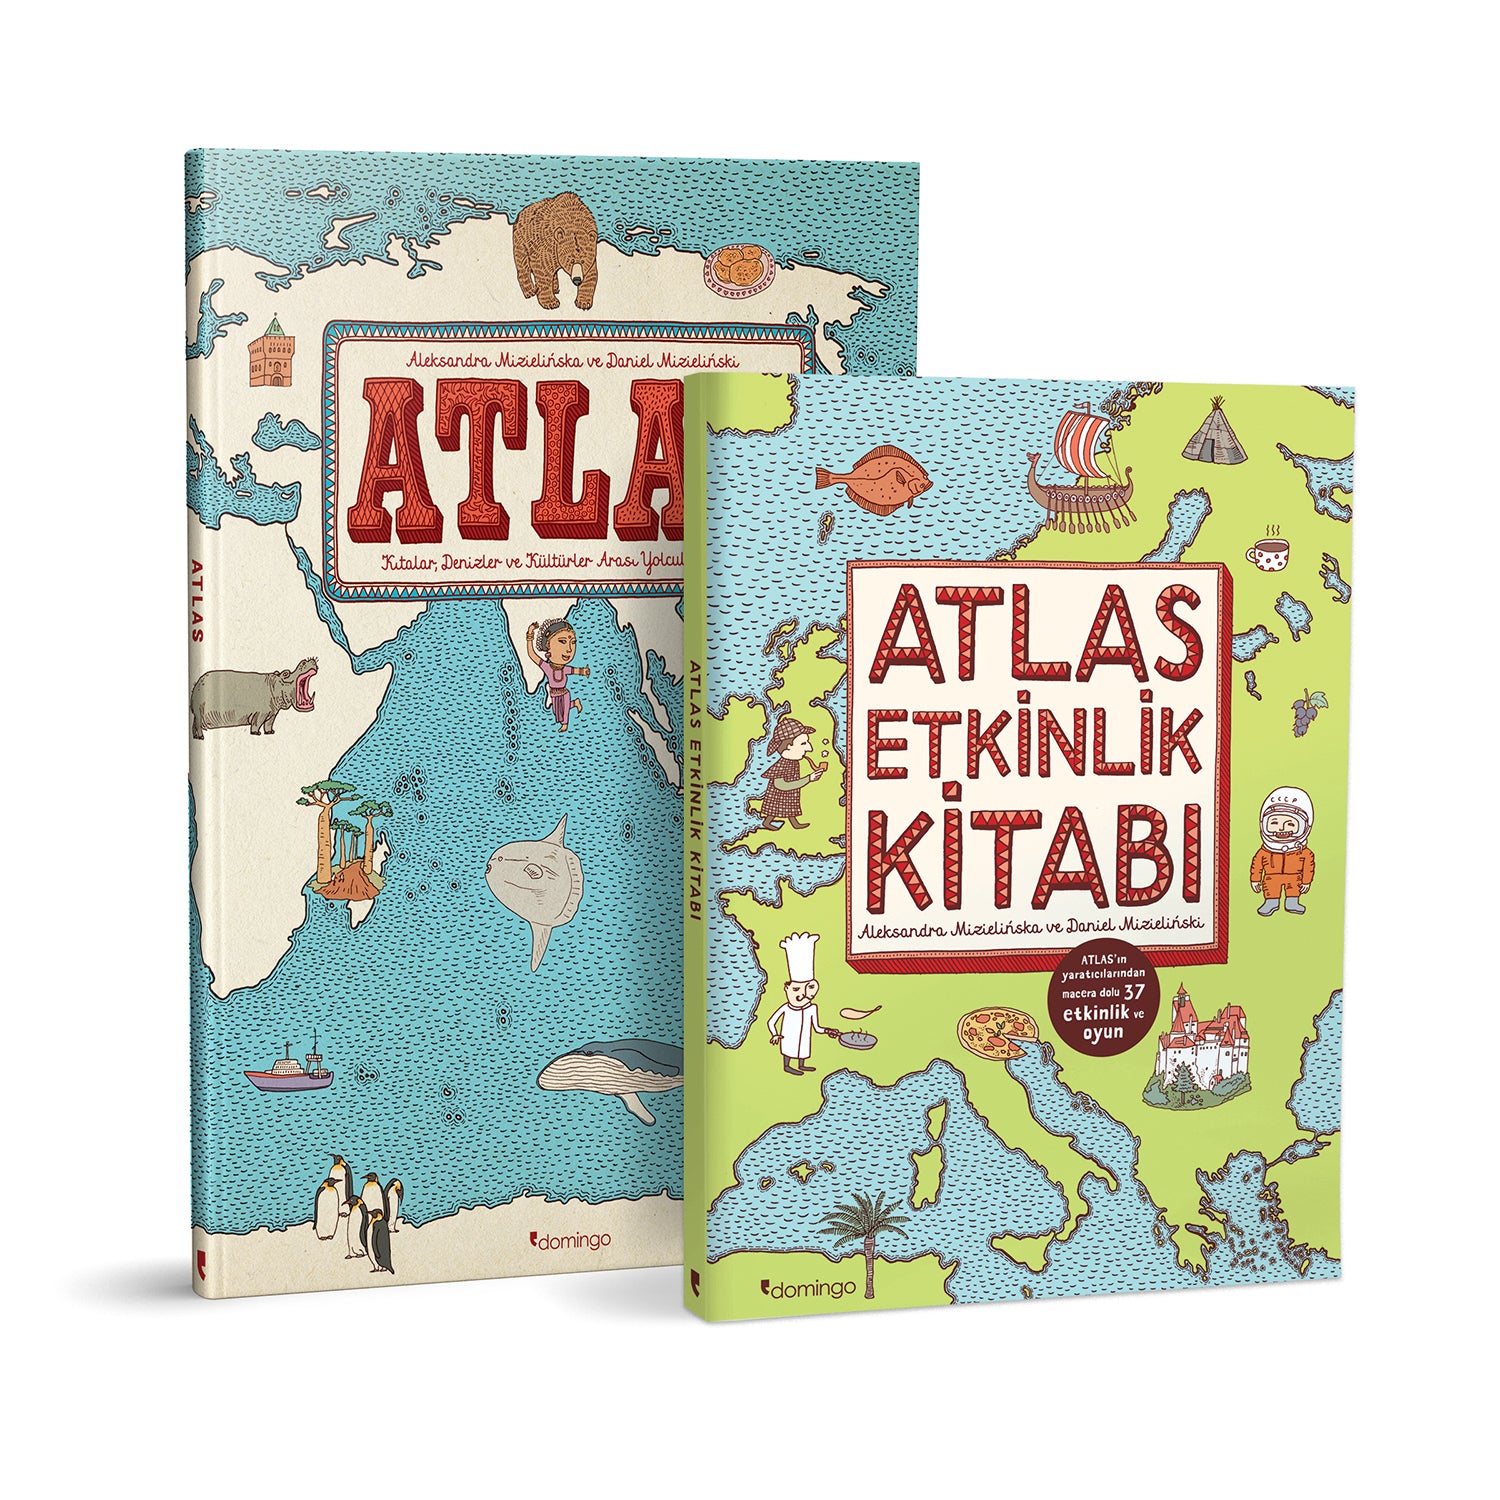 Atlas Set (Atlas + Atlas Etkinlik)